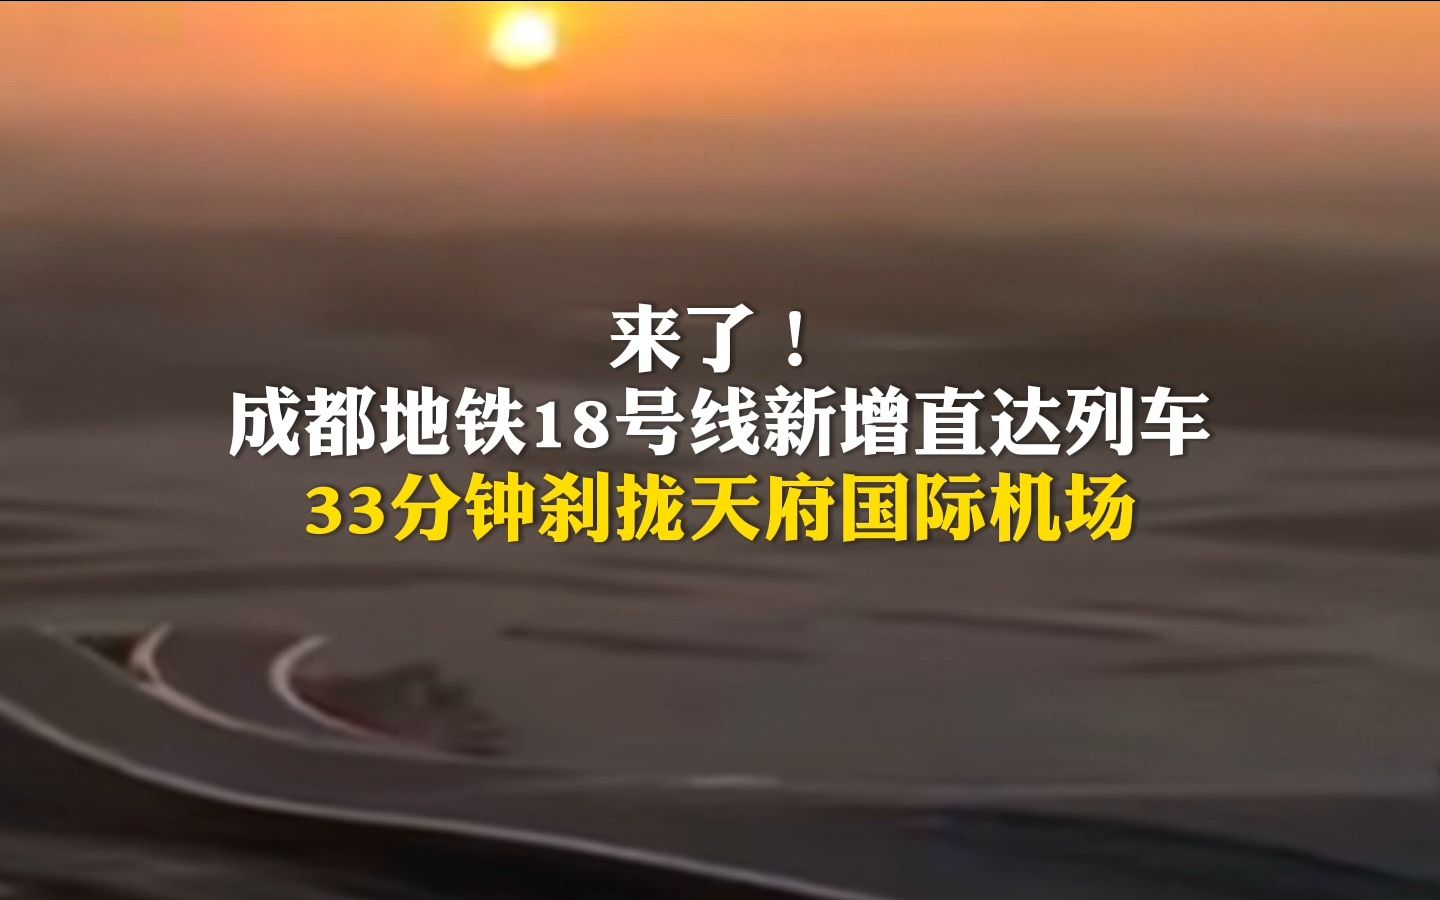 来了！成都地铁18号线新增直达列车，33分钟到达天府国际机场！